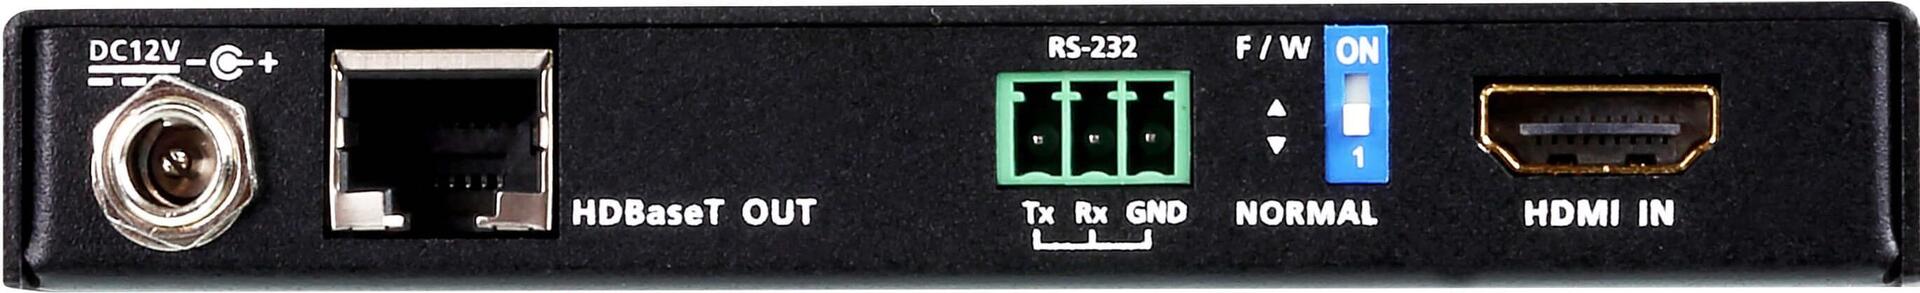 ATEN VanCryst VE1830 - Sender und Empfänger - serielle Video-/Audio-Erweiterung - RS-232, HDMI, HDBa